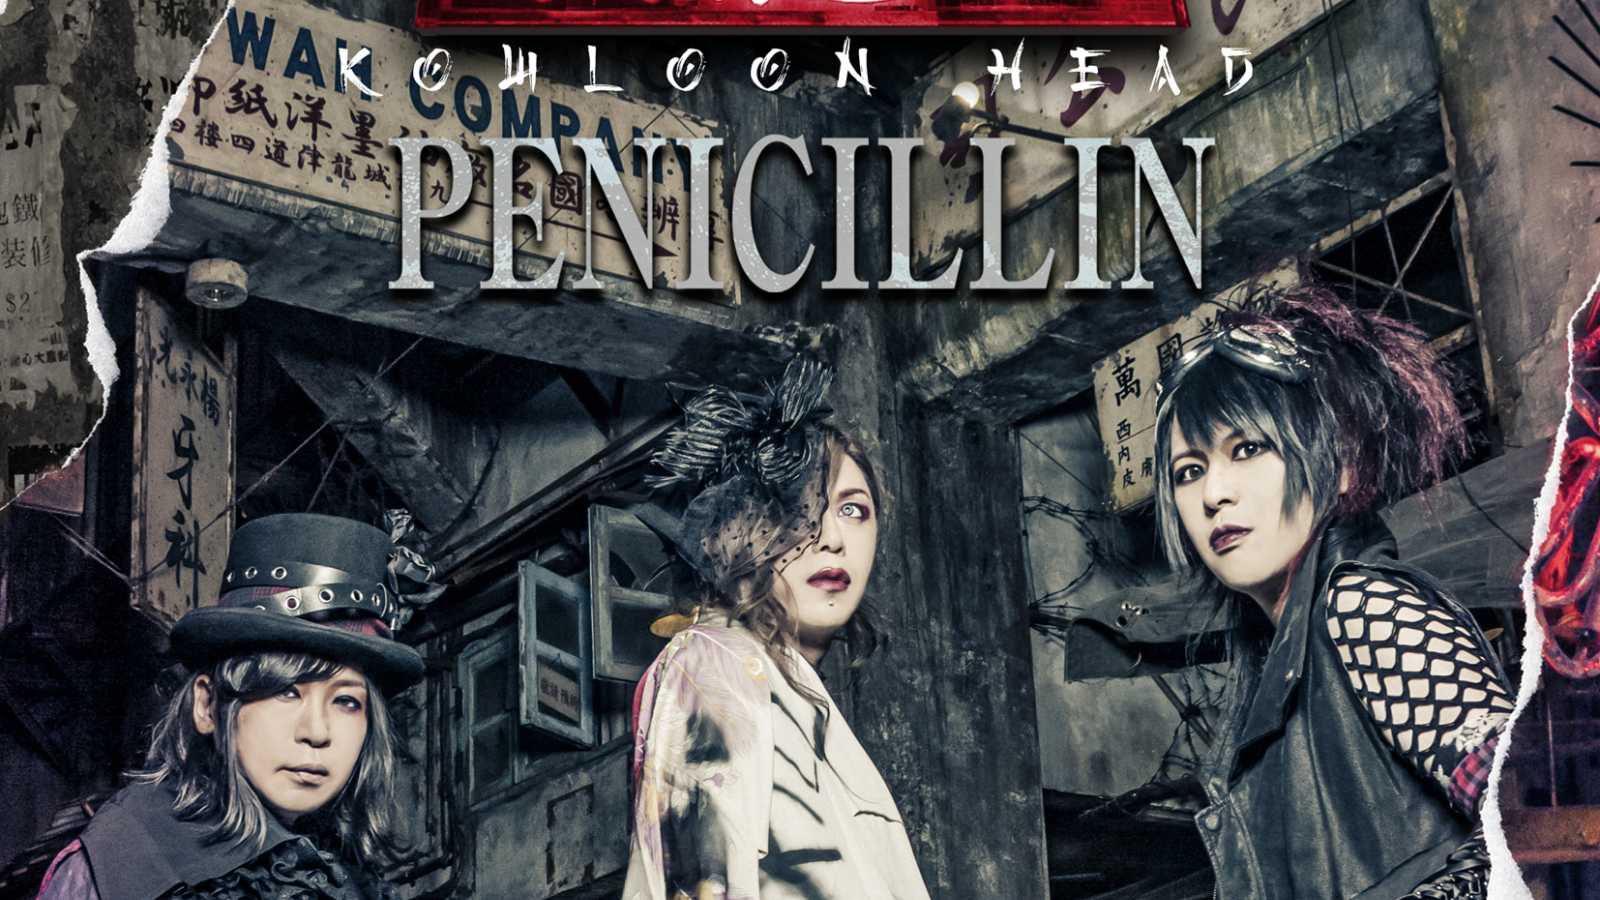 PENICILLIN lance un nouveau mini-album © DUPLEX DEVELOPMENTS JAPAN Inc. All rights reserved.